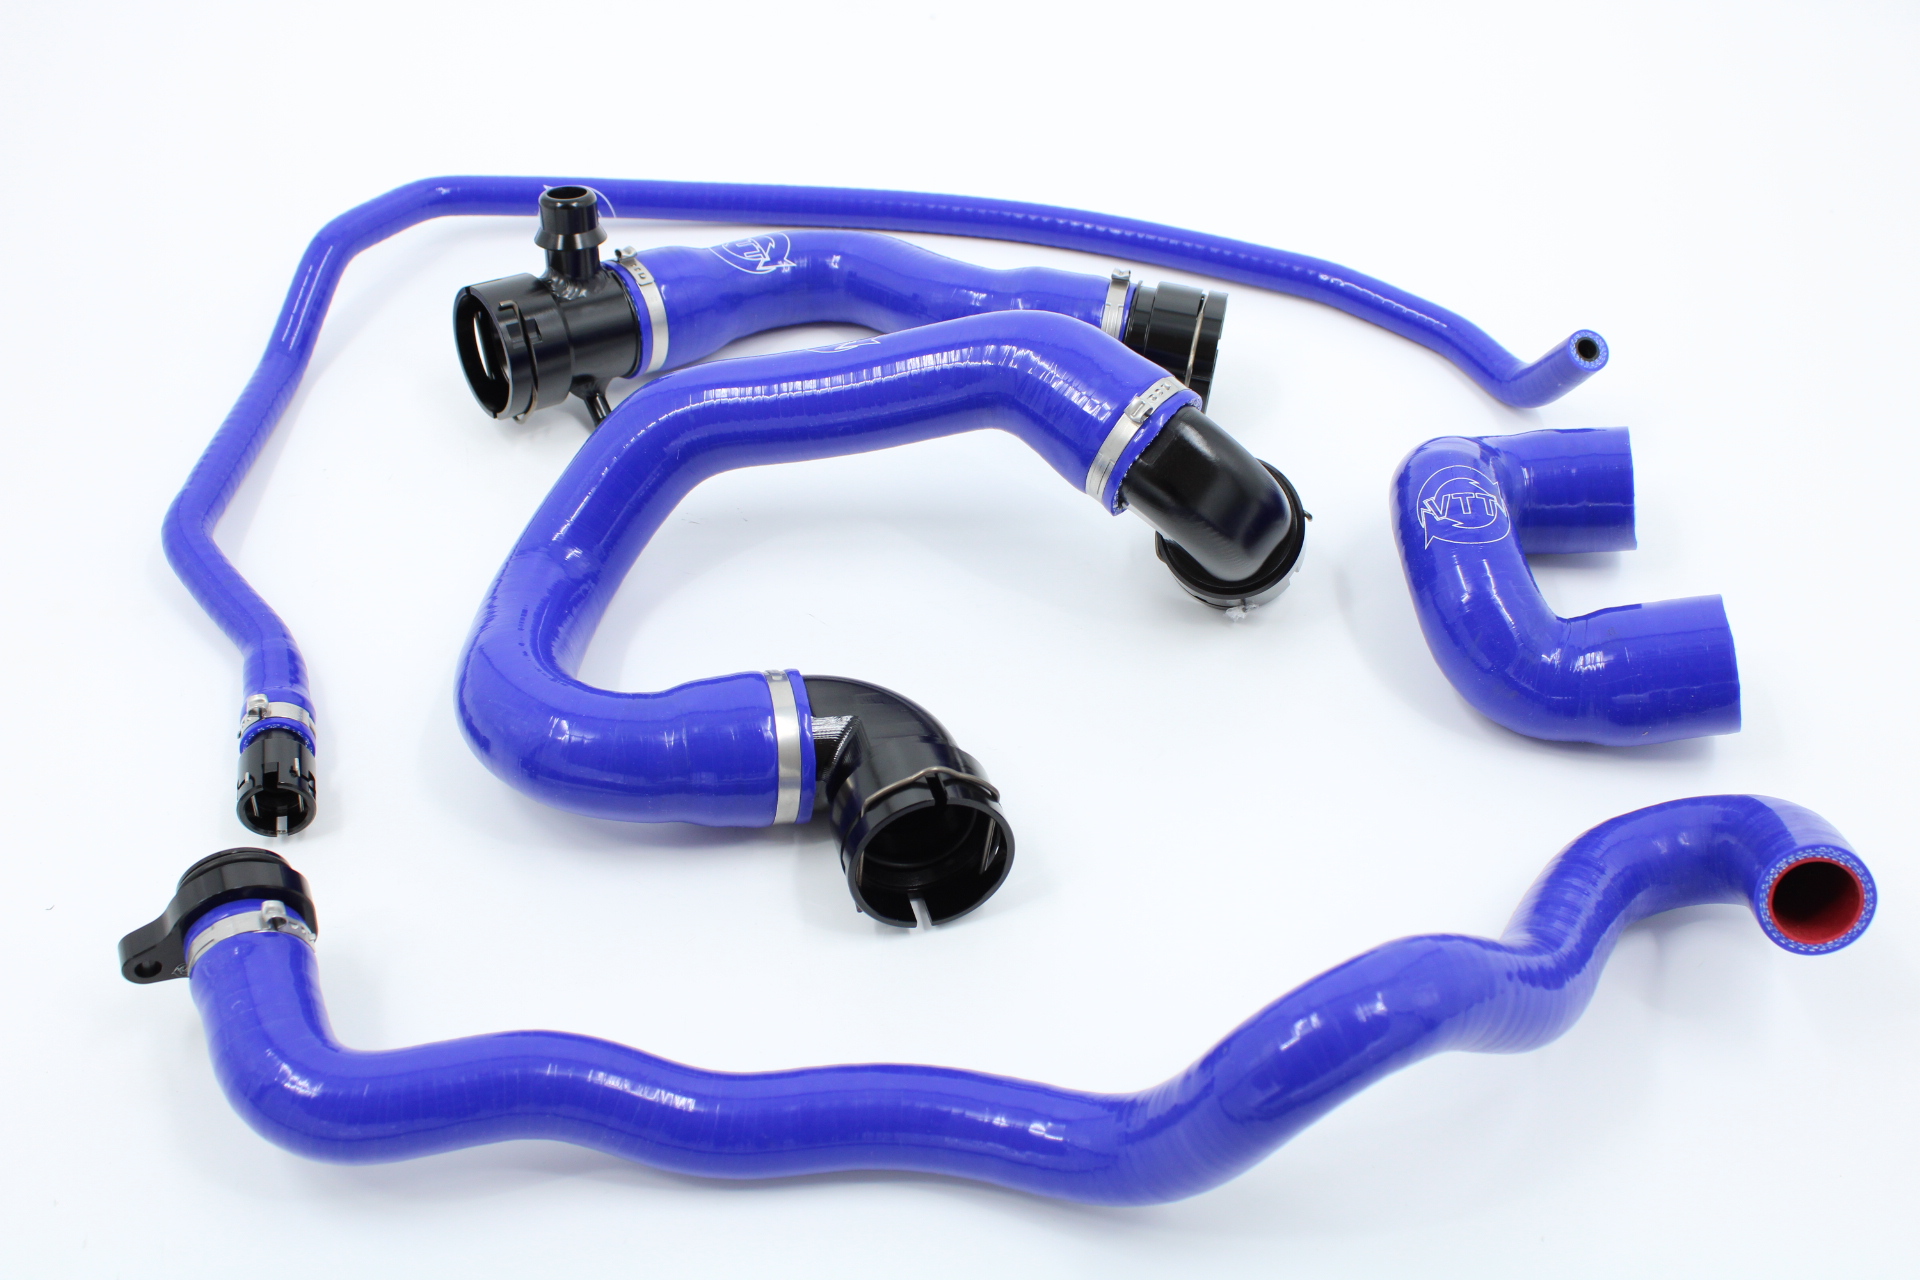 VTT Billet / Silicone N54 coolant hose kit